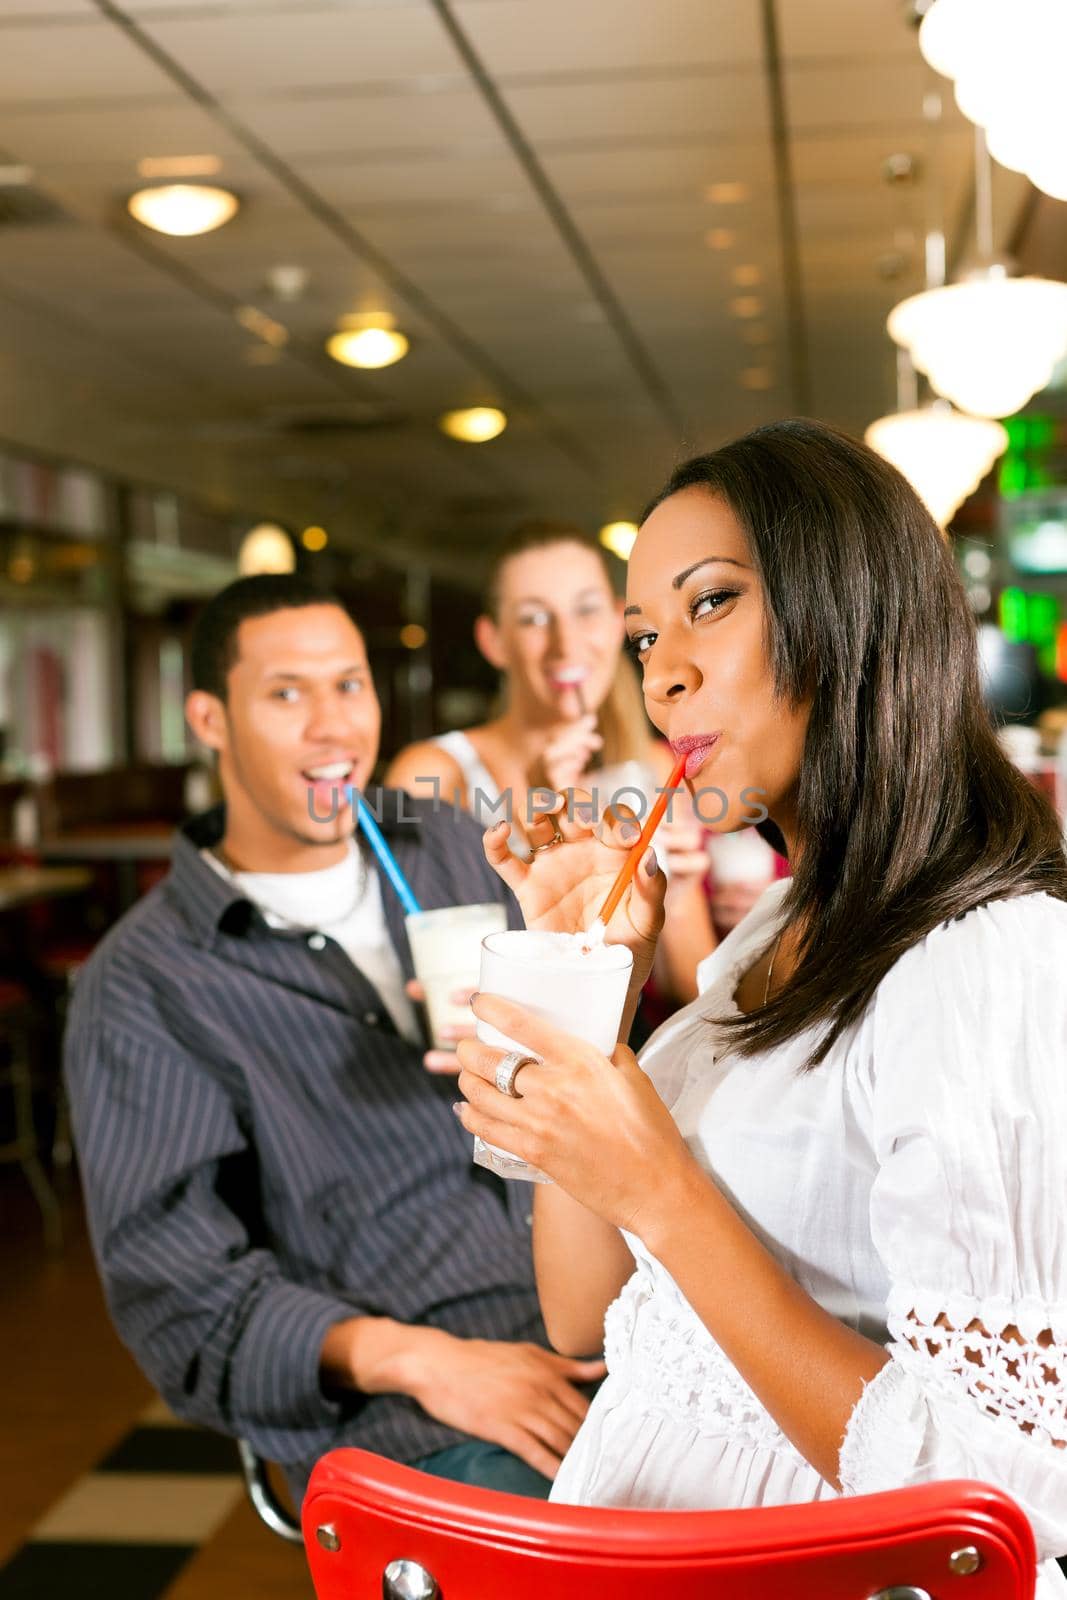 Friends drinking milkshakes in a bar by Kzenon